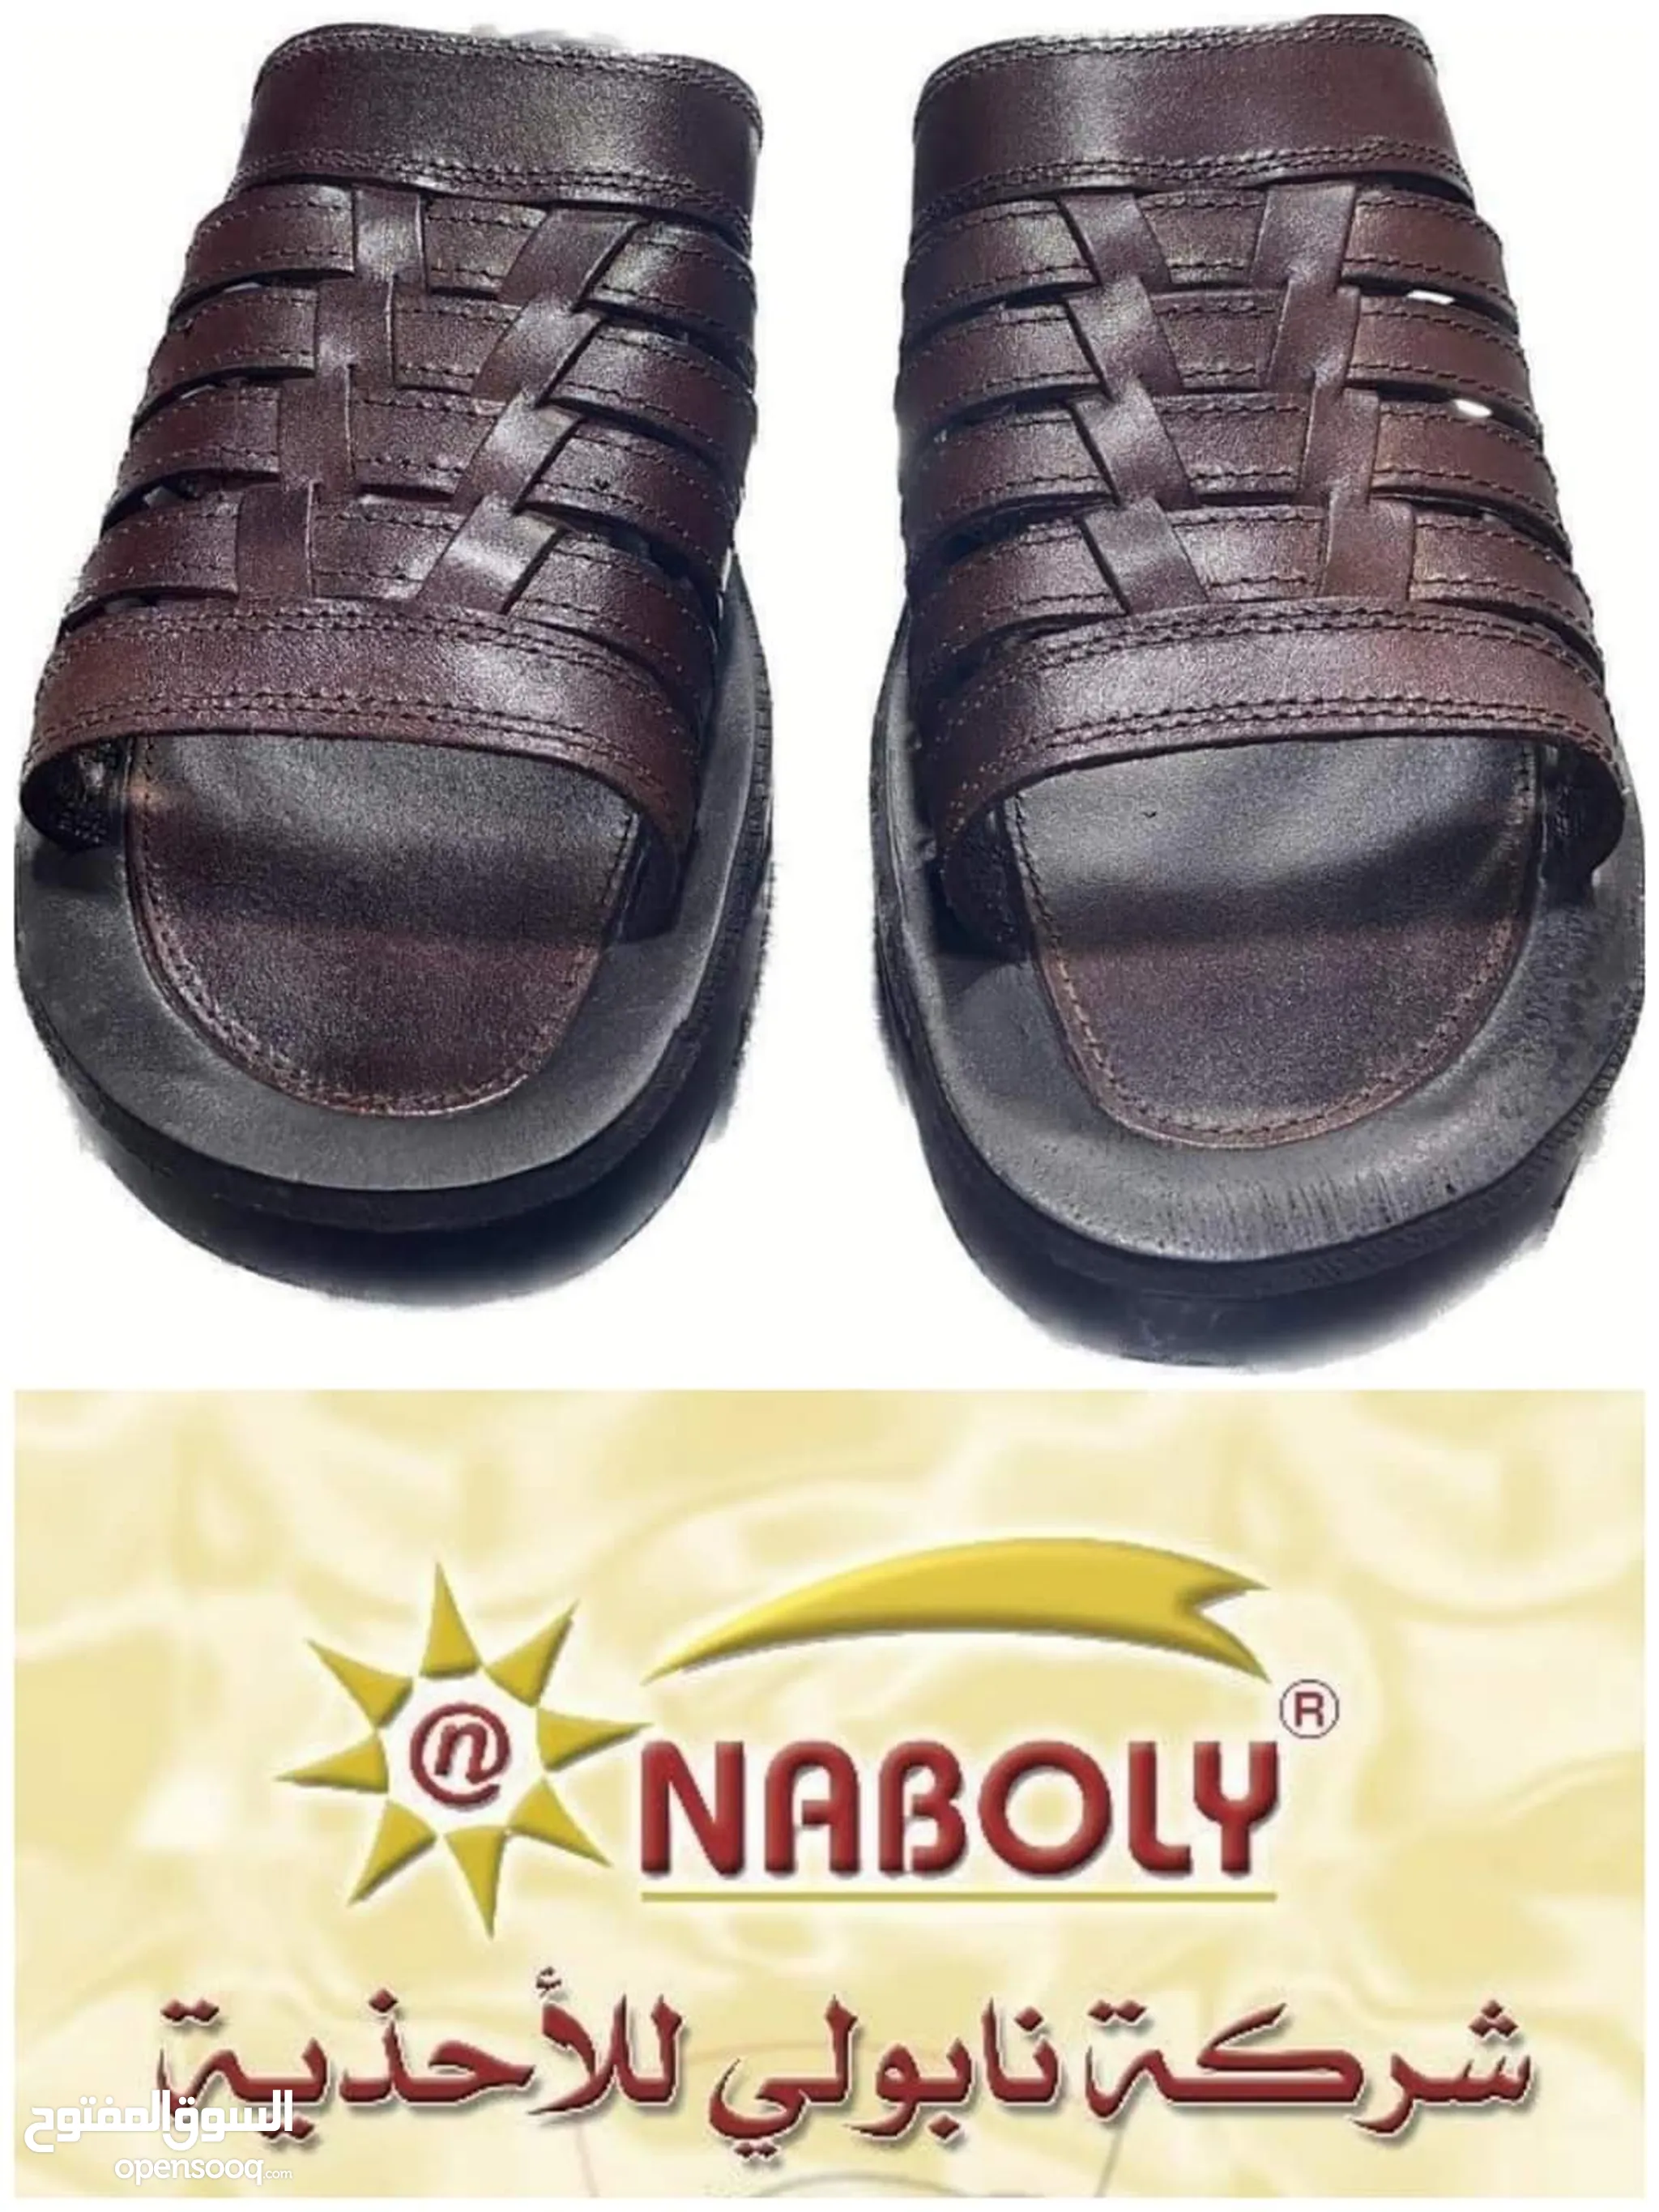 احذية أخرى شباشب وفليب فلوب للبيع : افضل الاسعار في الأردن | السوق المفتوح